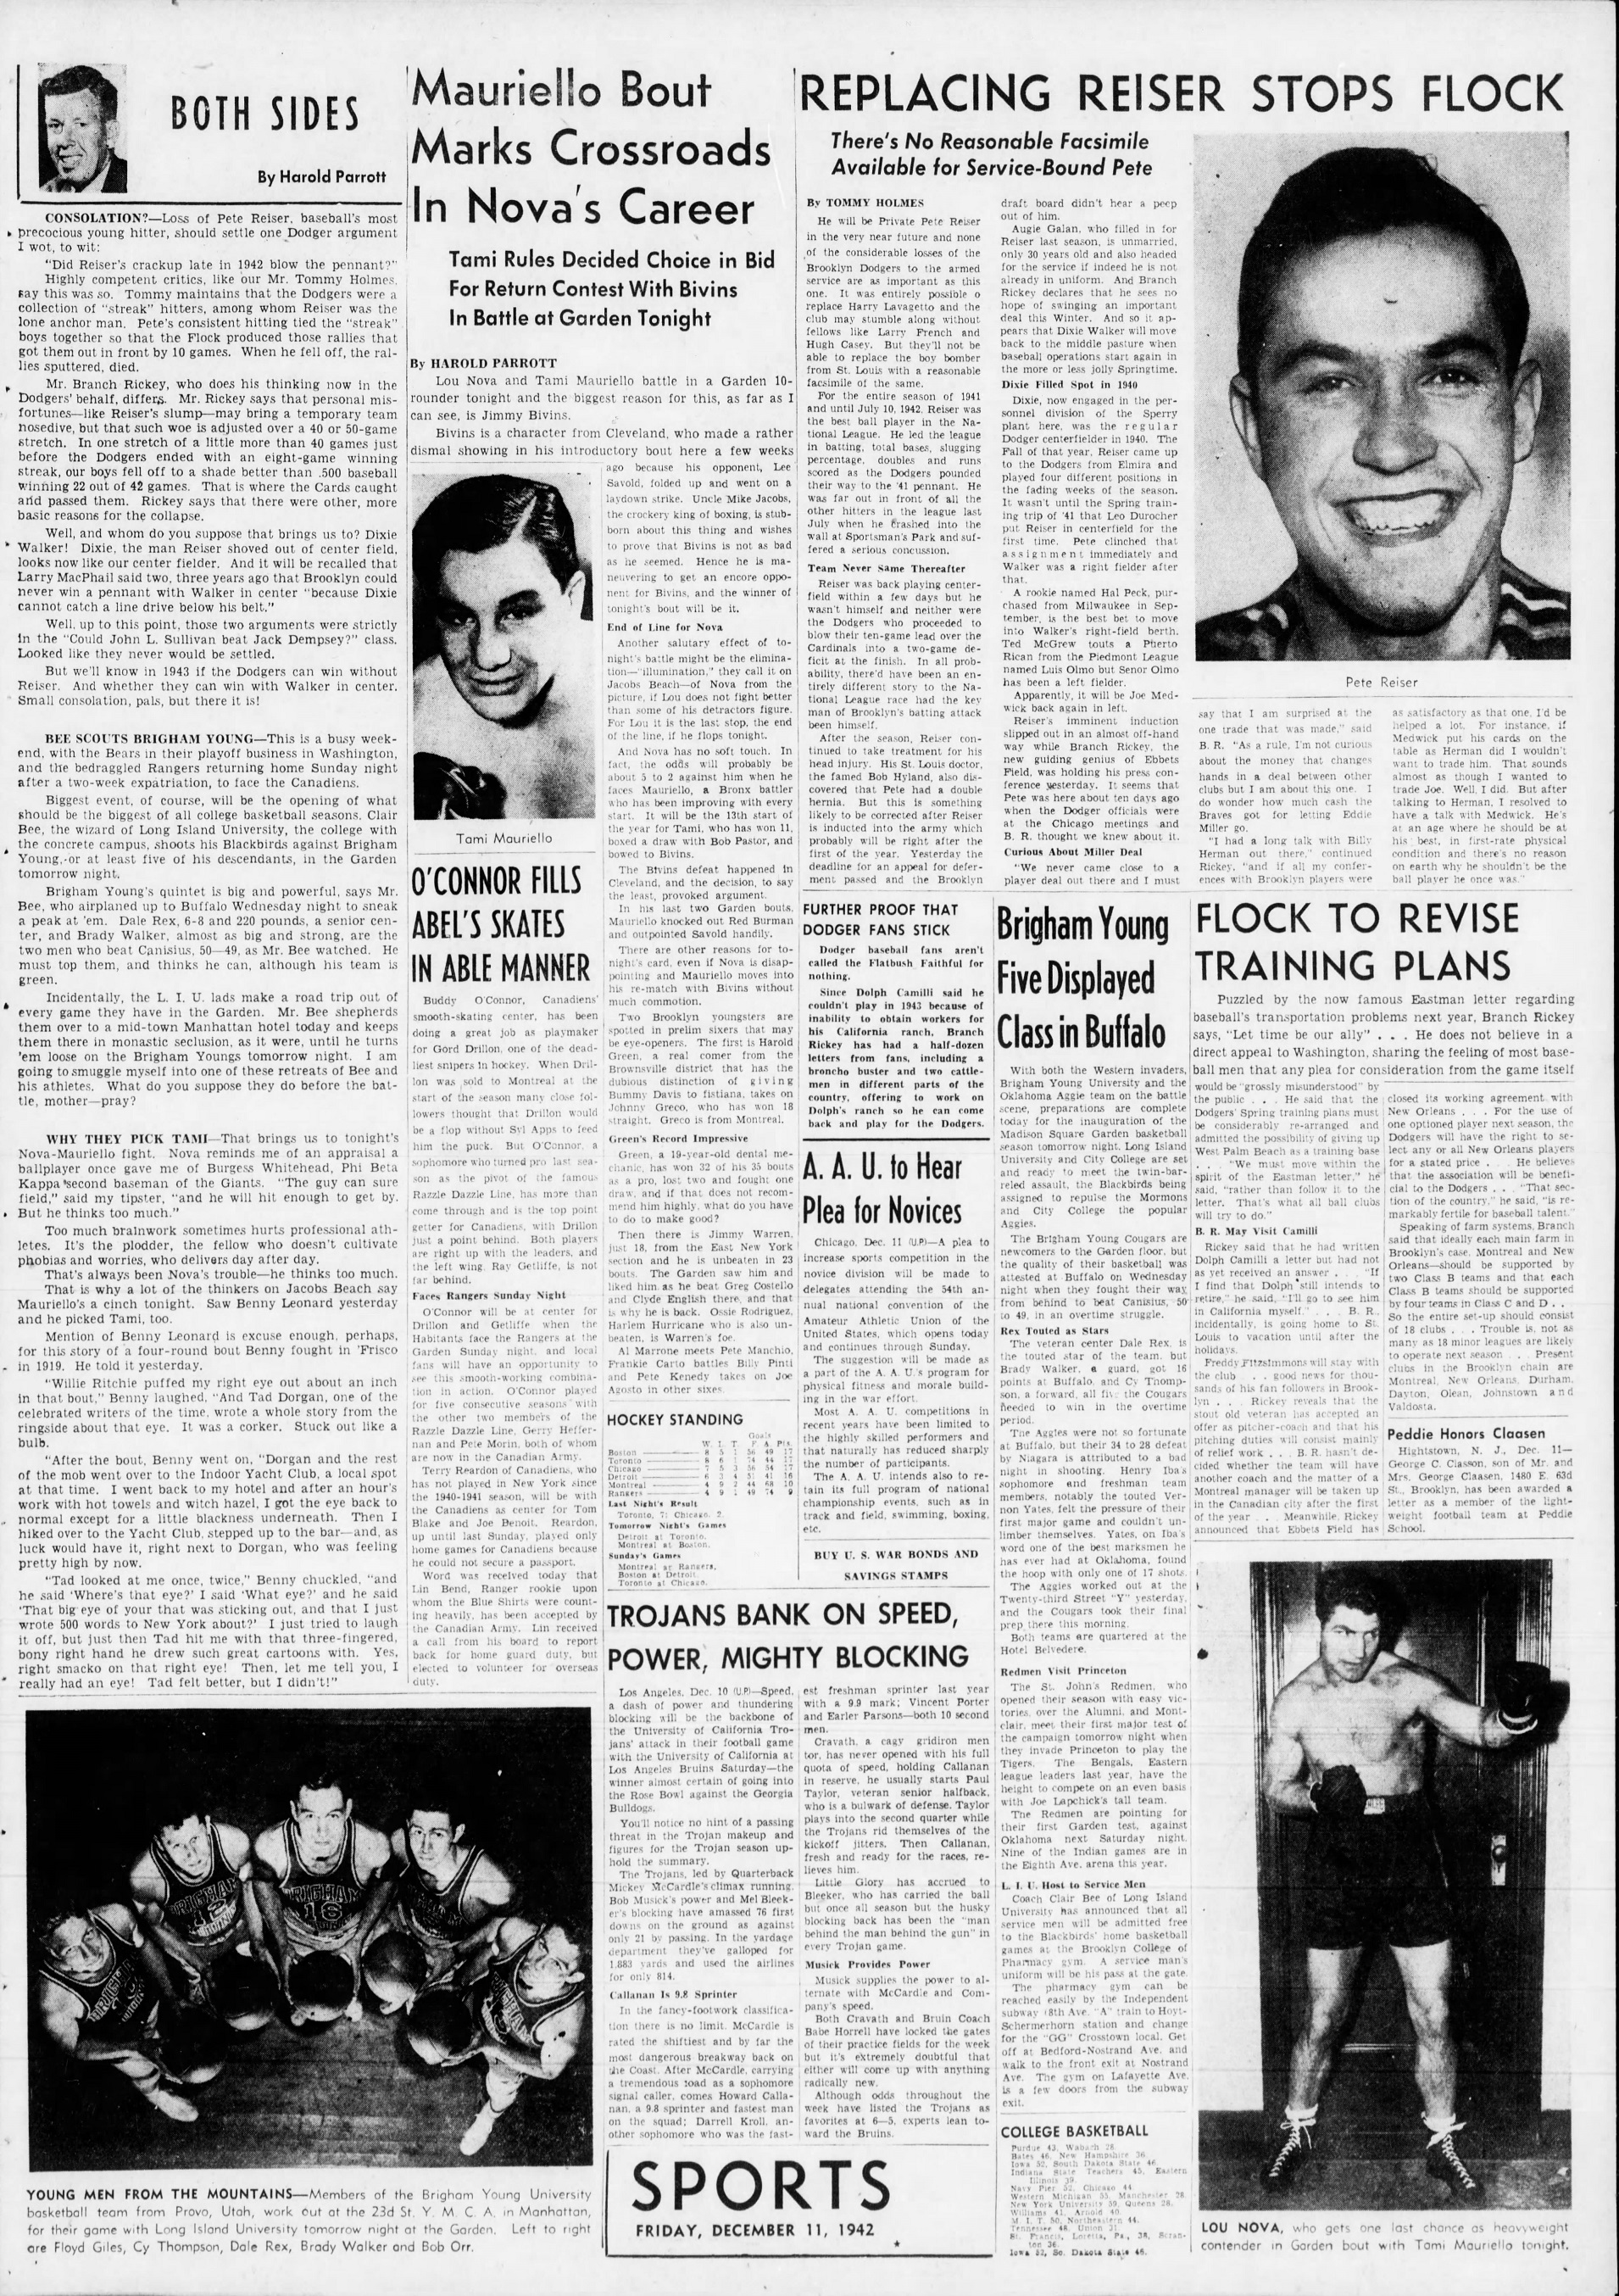 The_Brooklyn_Daily_Eagle_Fri__Dec_11__1942_(4).jpg